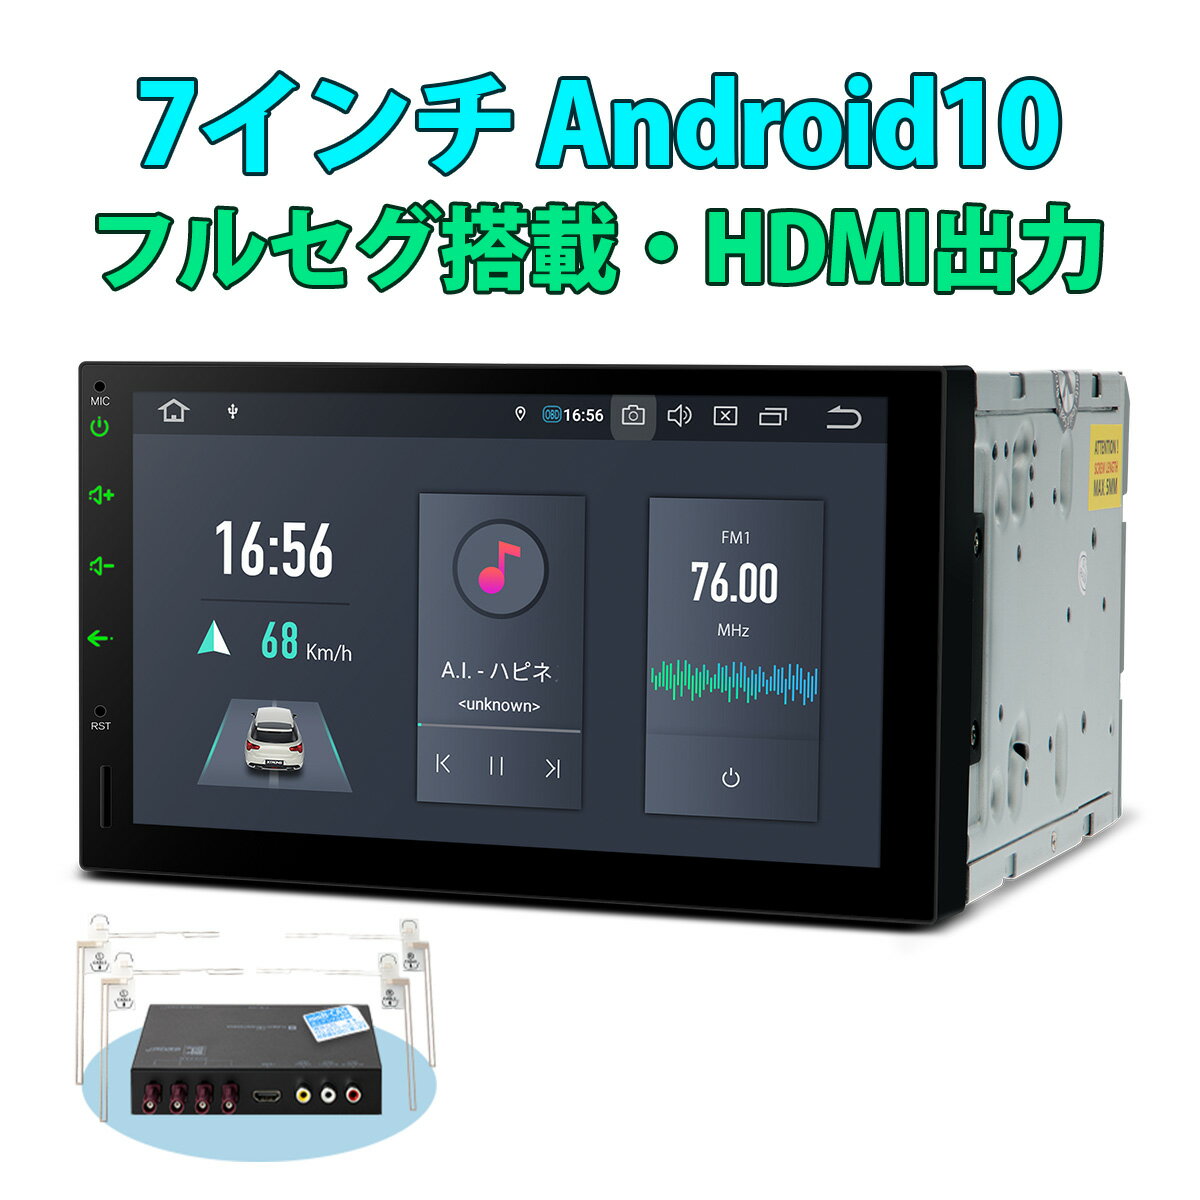 XTRONS カーナビ 2DIN 7インチ 地デジ搭載 タッチ連動操作可 6コア Android10.0 車載PC フルセグ HDMI出力 RAM4G ROM64G カーステレオ カーオーディオ OBD2 ミラーリング 4K DVR Bluetooth iPhone対応 android auto対応 DSP(TQS700SIL)